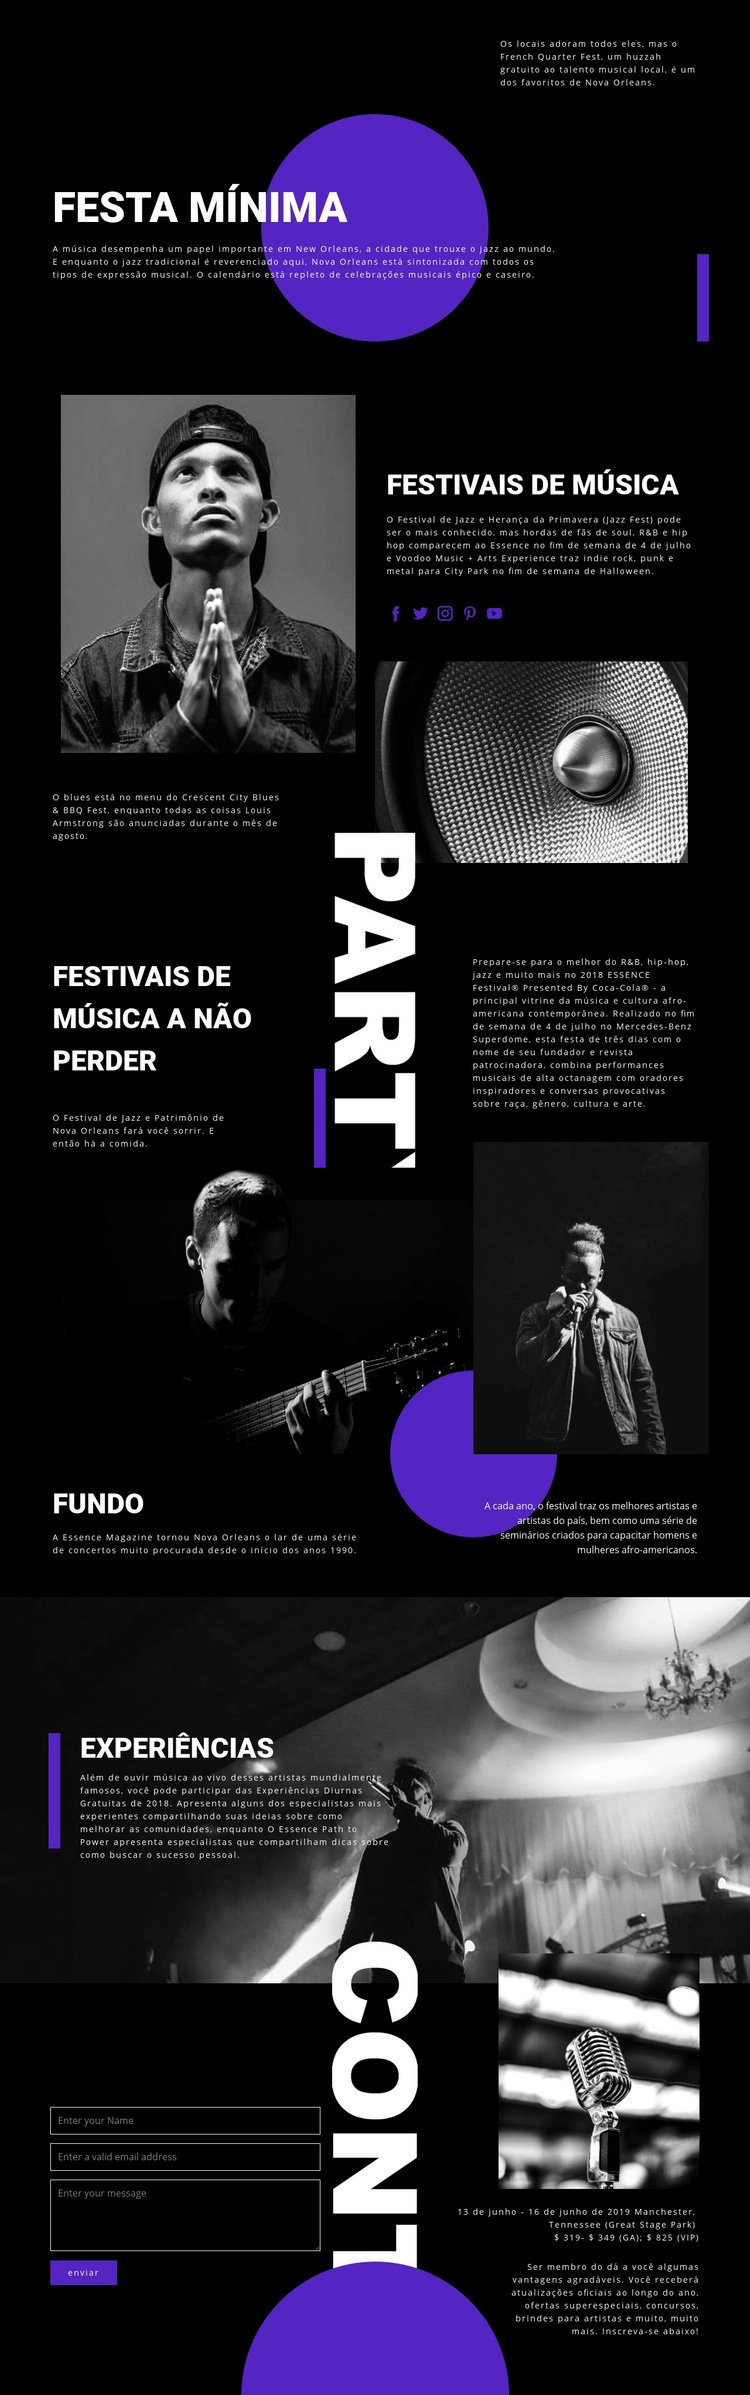 Festival de Música Design do site